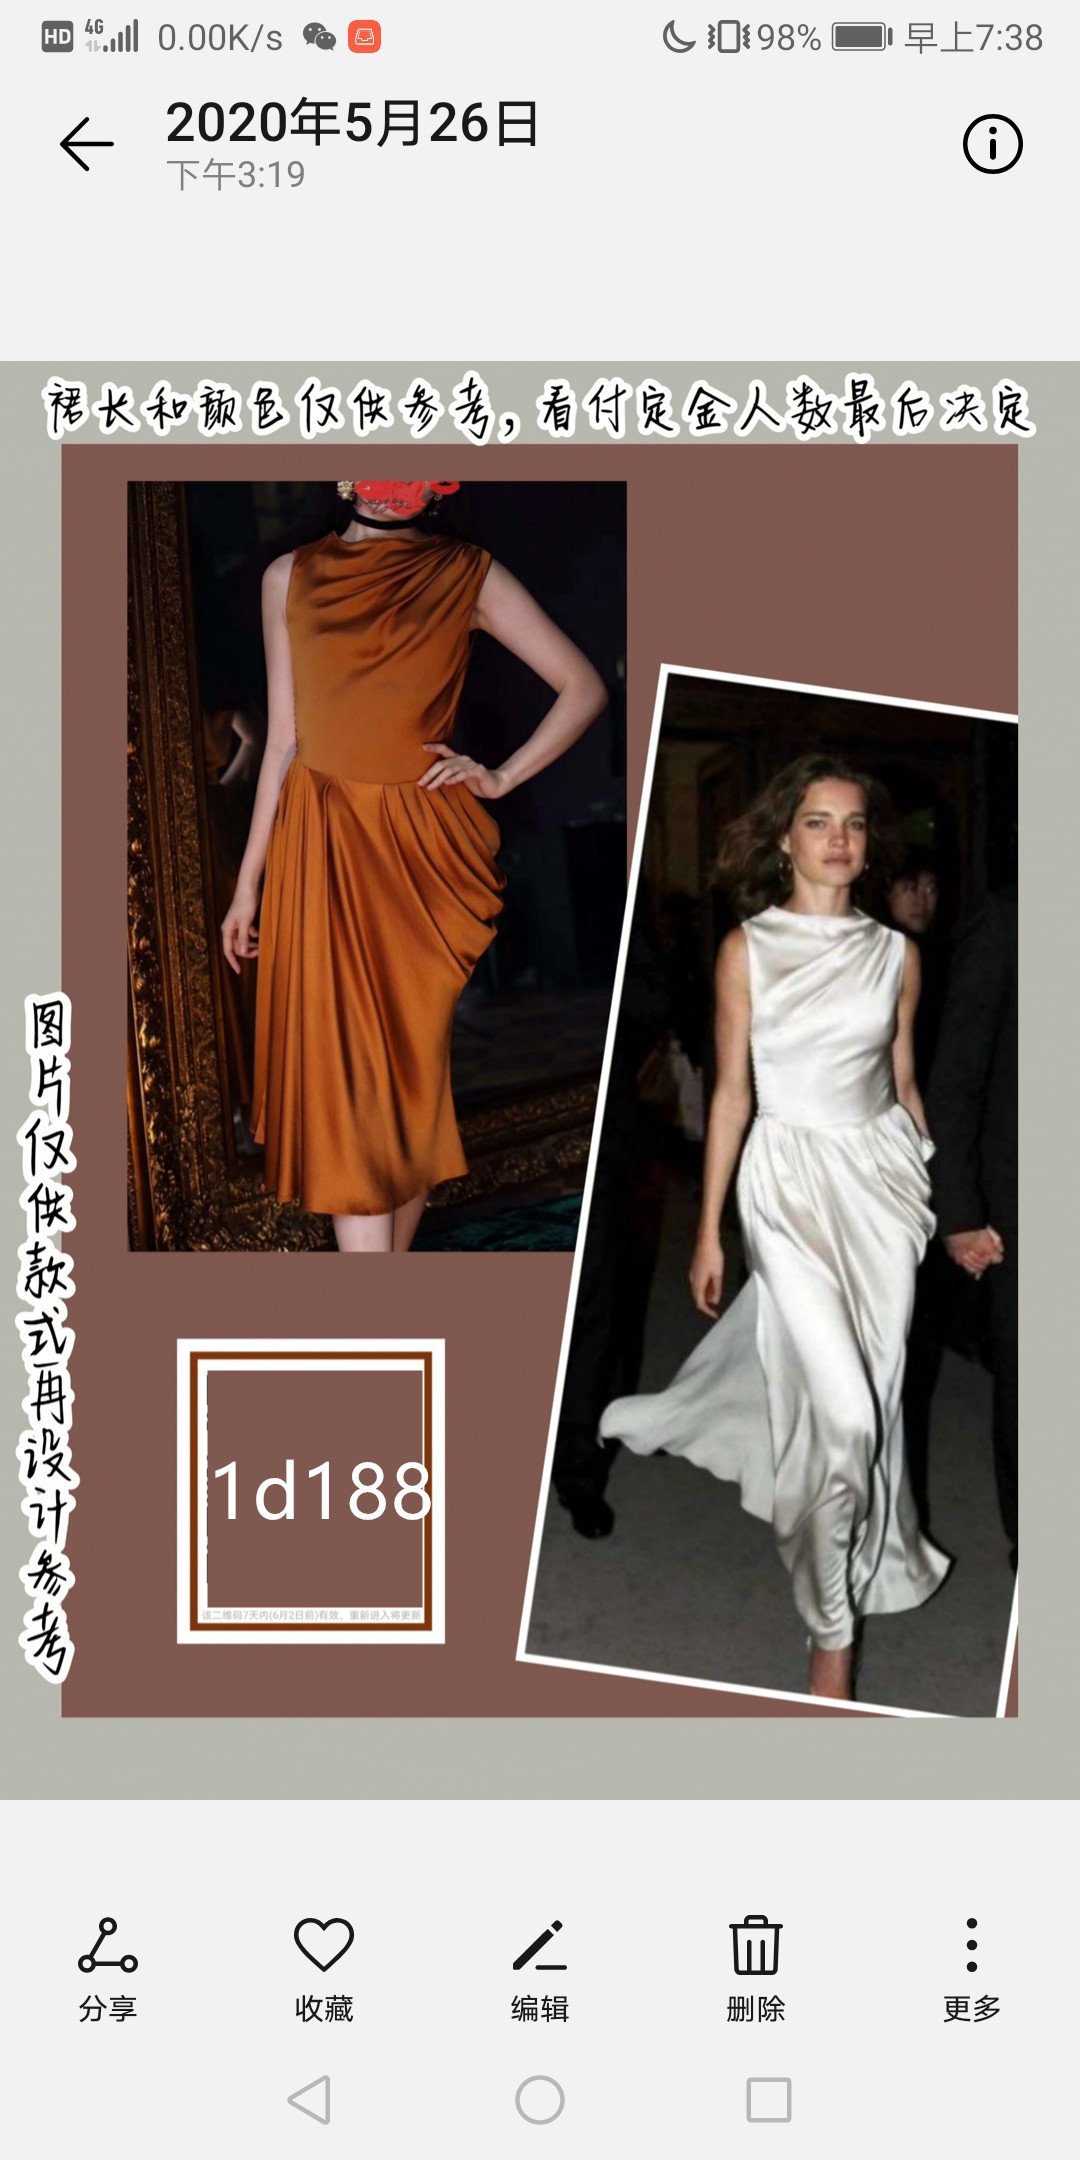 【投稿】喵娘精工@1d188@《雍容典雅》--太子妃Natalia同款Dior缎面连衣裙